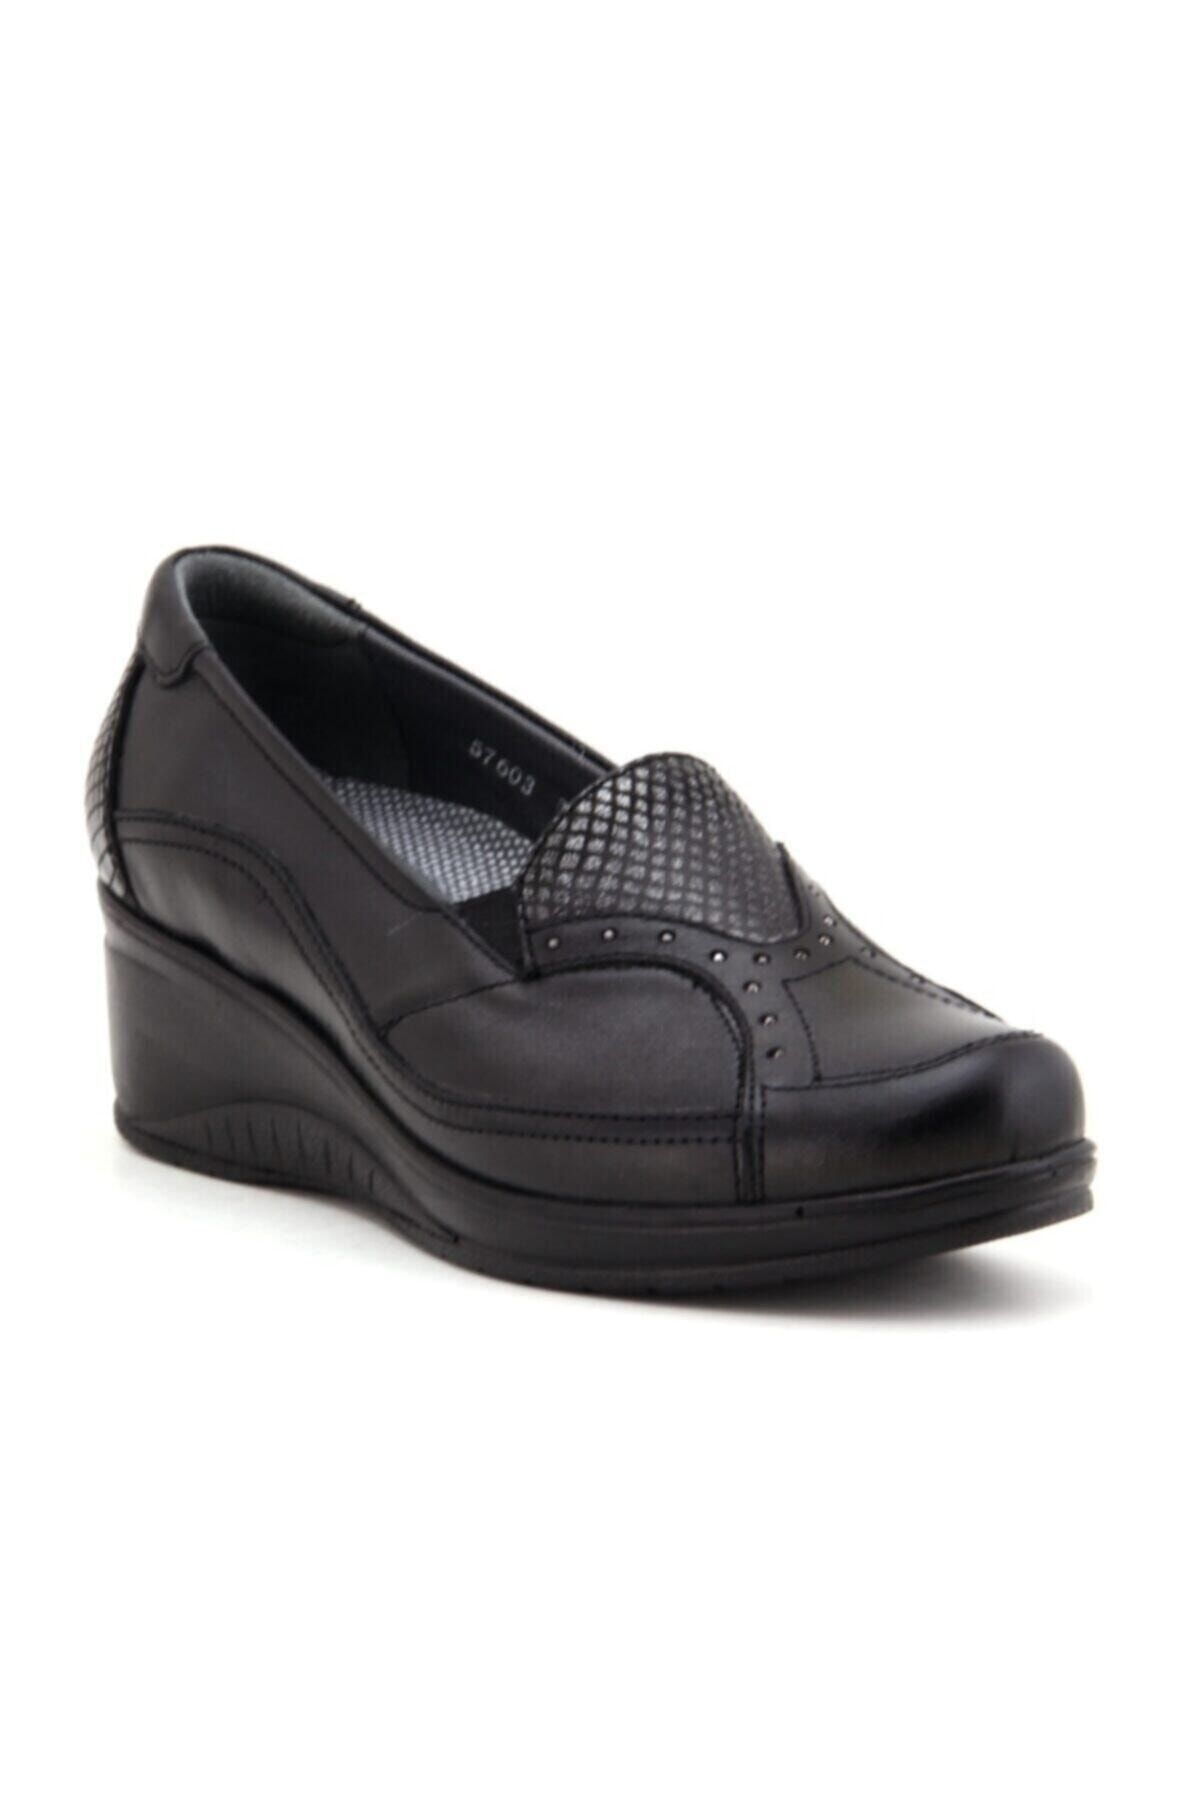 Forelli Rosa-g Comfort Kadın Ayakkabı Siyah